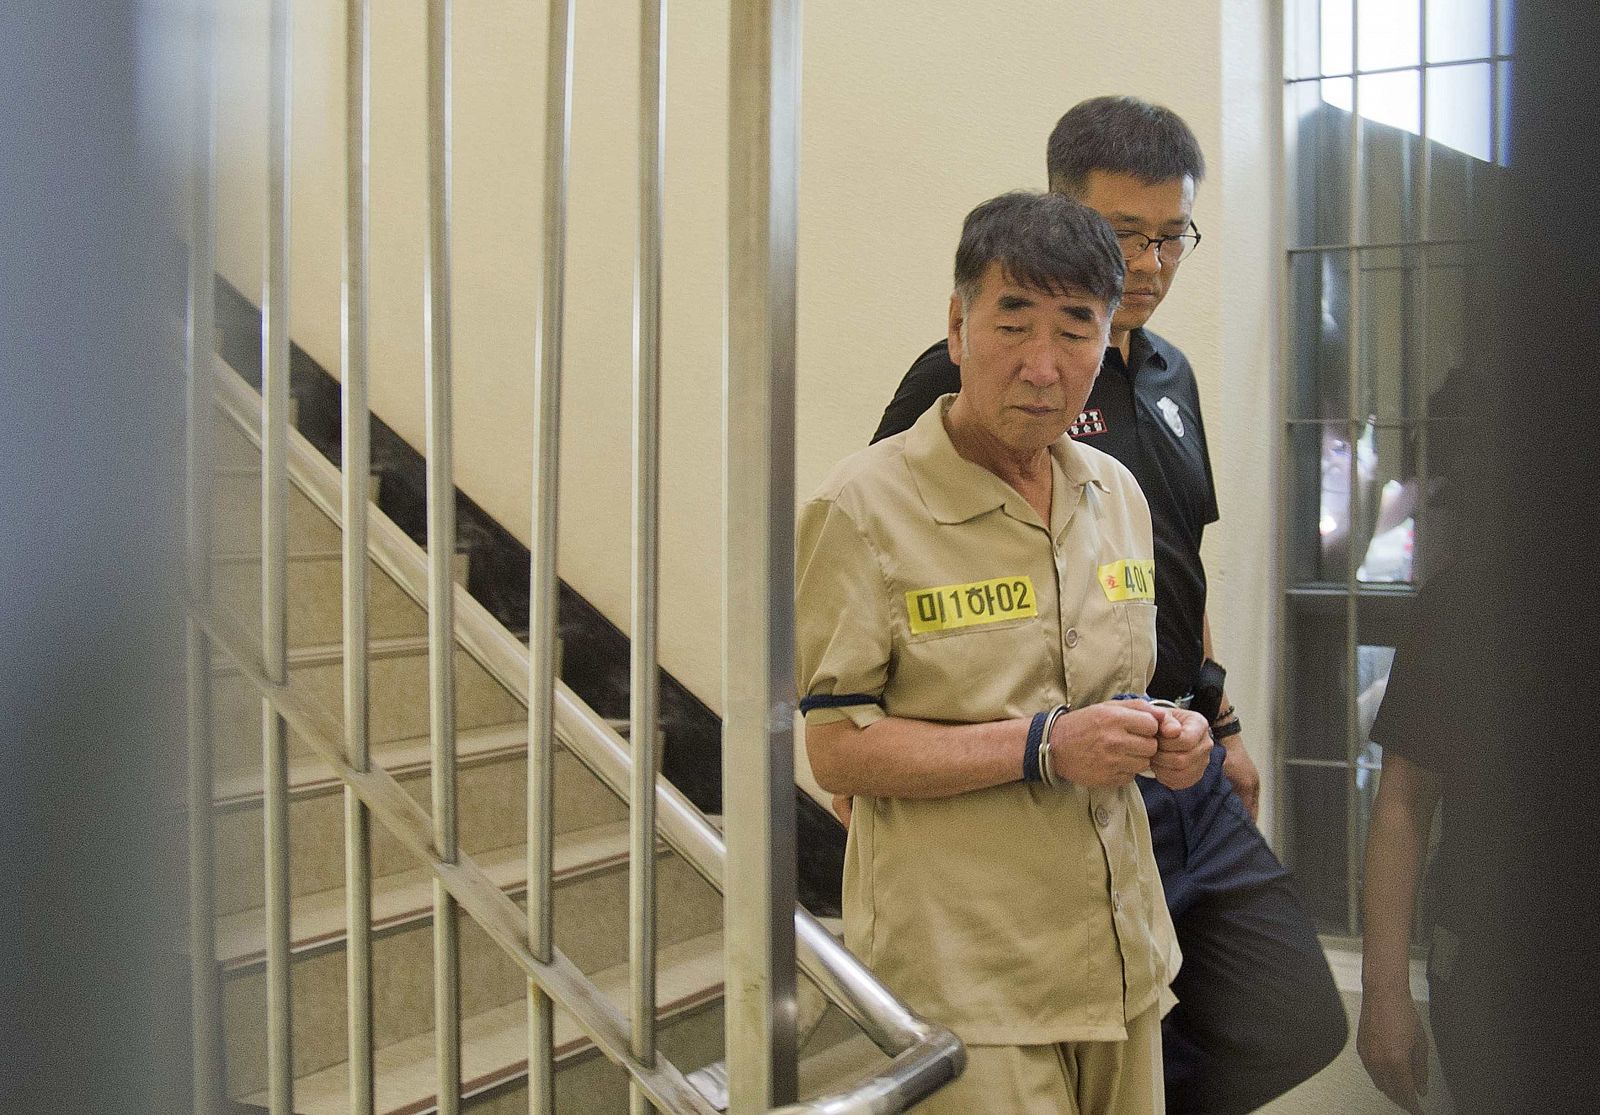 Lee Joon-seok, capitán del ferry Sewol, hundido en Corea del Sur, llega al tribunal que le juzga